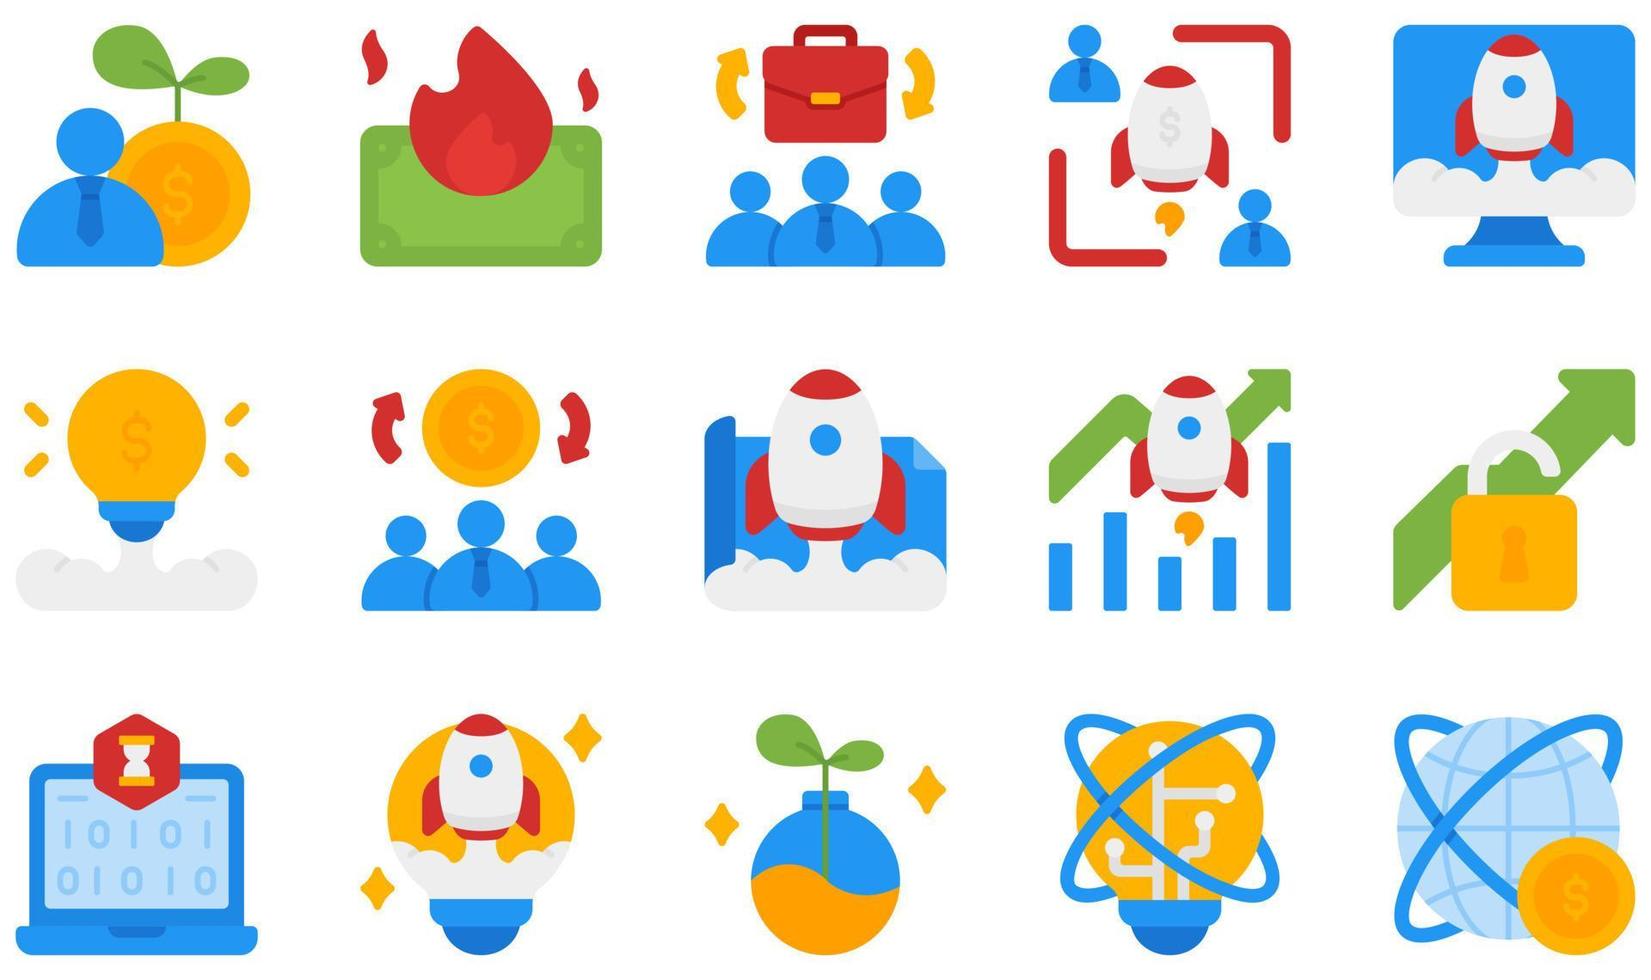 conjunto de ícones vetoriais relacionados a startups. contém ícones como burn, crowdfunding, design, growth, hackathon, idea e muito mais. vetor